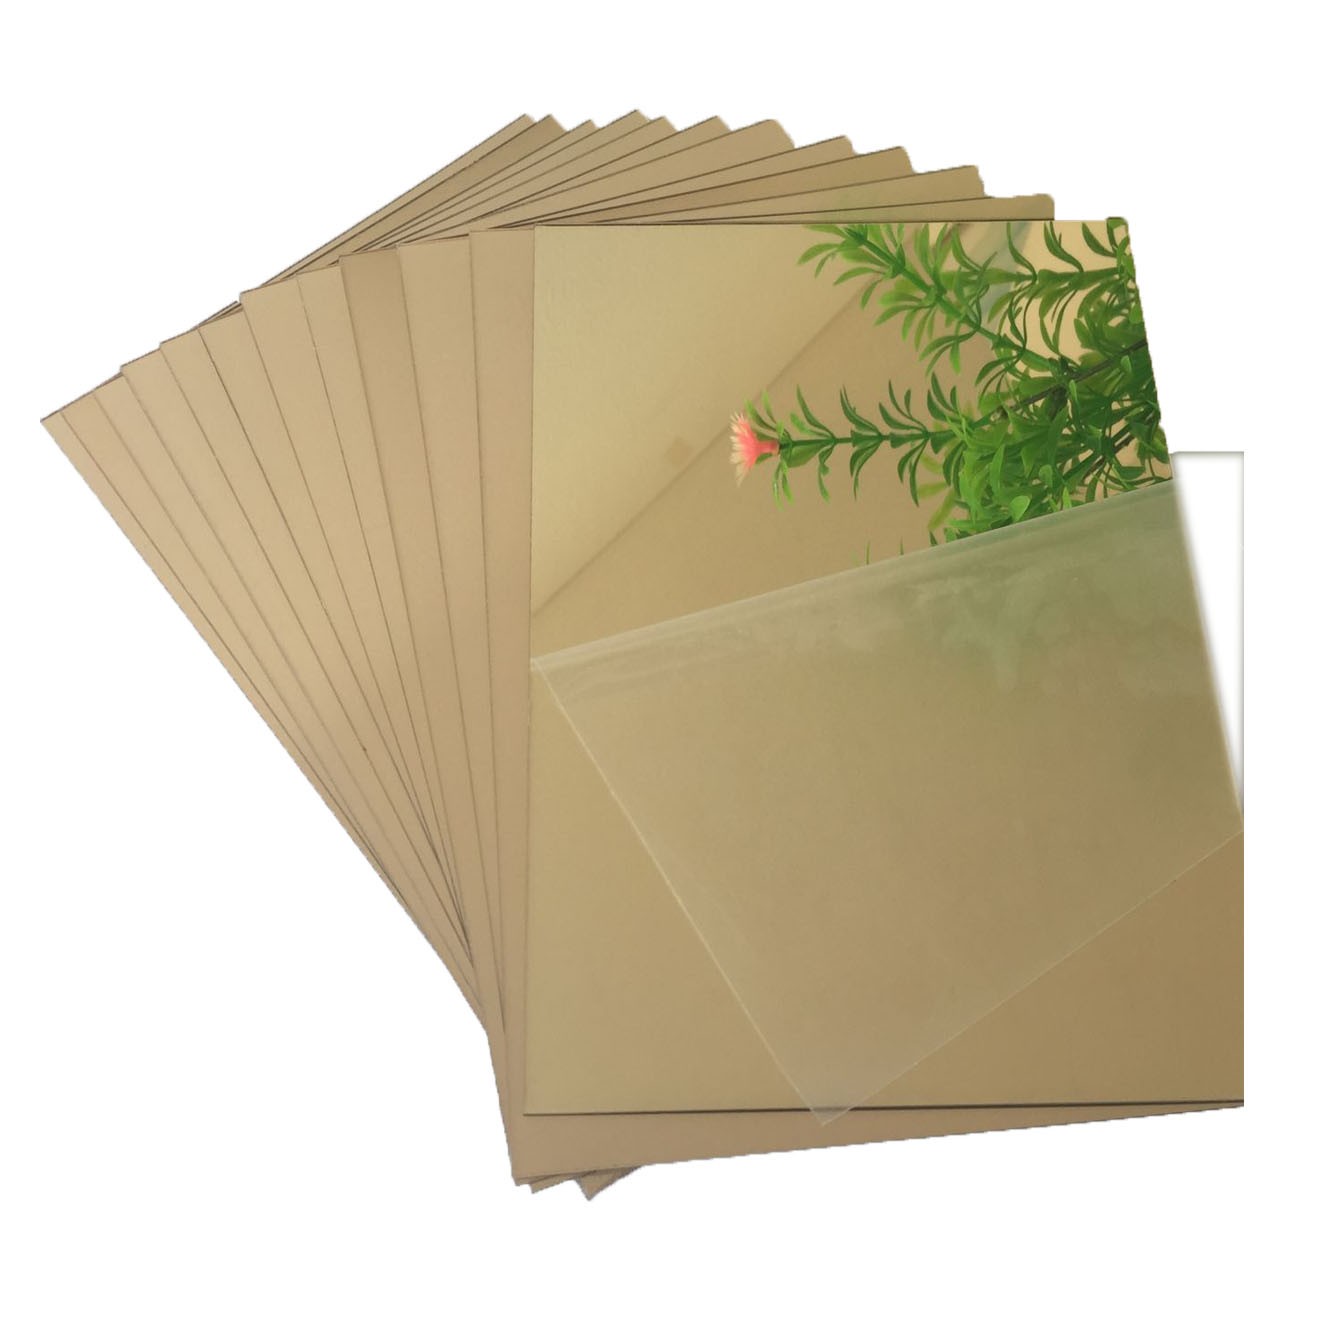 light golden acrylic mirror sheet 1220x1830 1220x2440 Manufacturers, light golden acrylic mirror sheet 1220x1830 1220x2440 Factory, Supply light golden acrylic mirror sheet 1220x1830 1220x2440